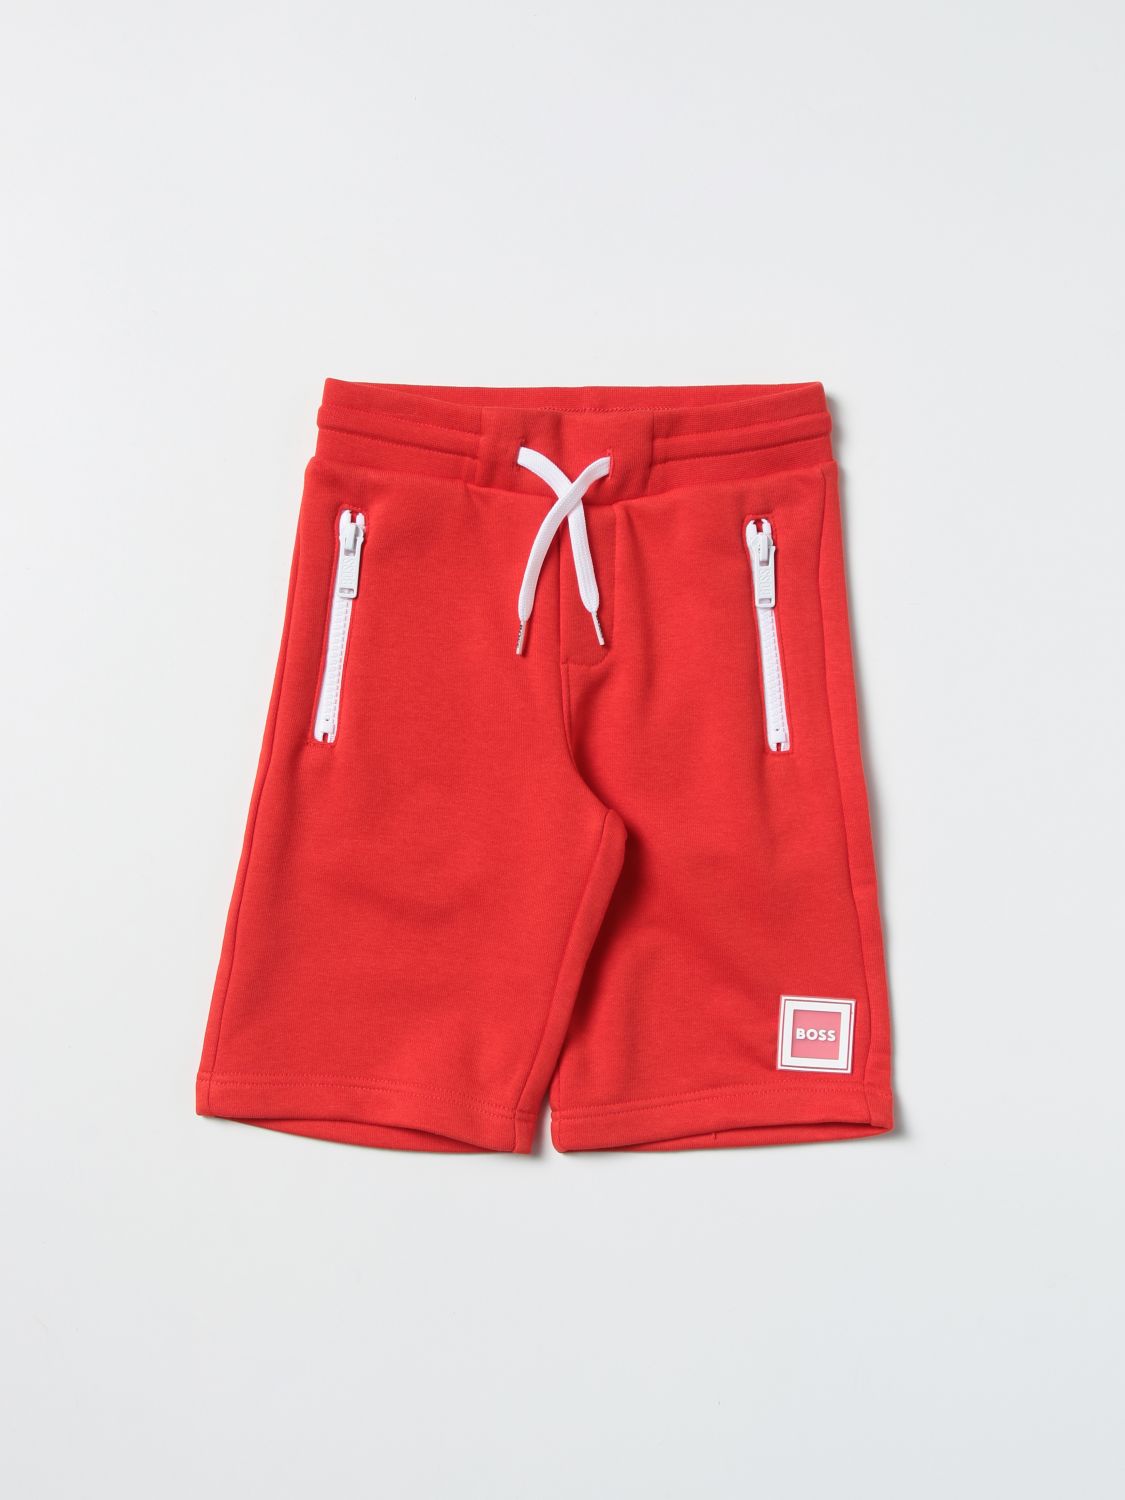 Shorts Hugo Boss: Hugo Boss shorts for boy red 1